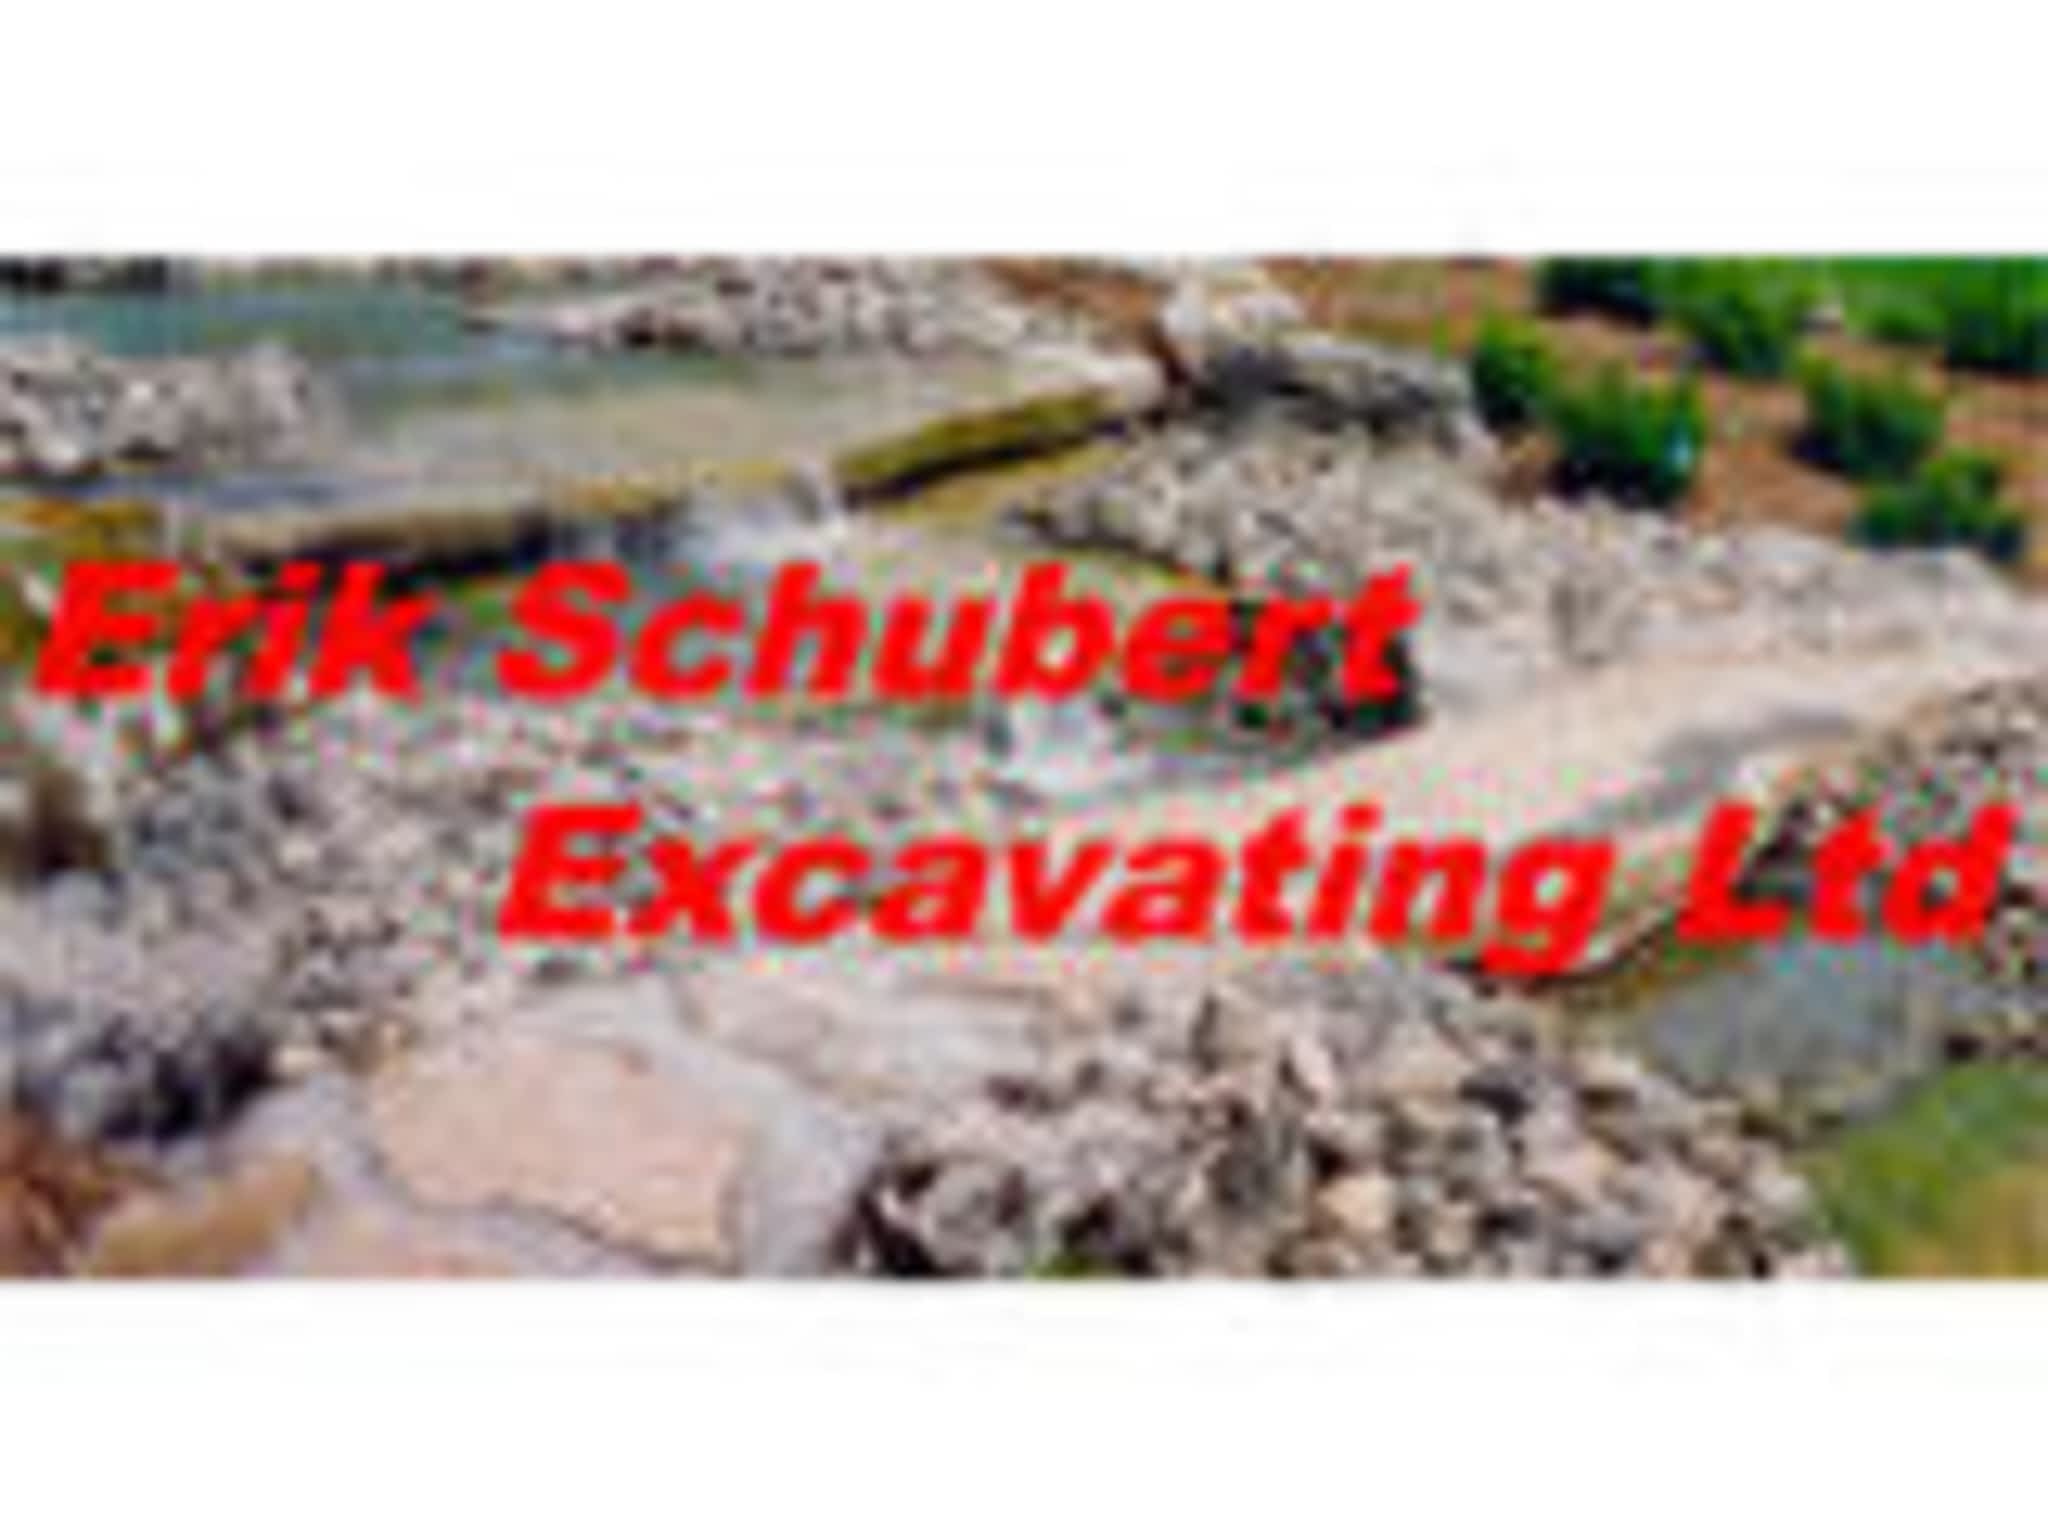 photo Erik Schubert Excavating Ltd